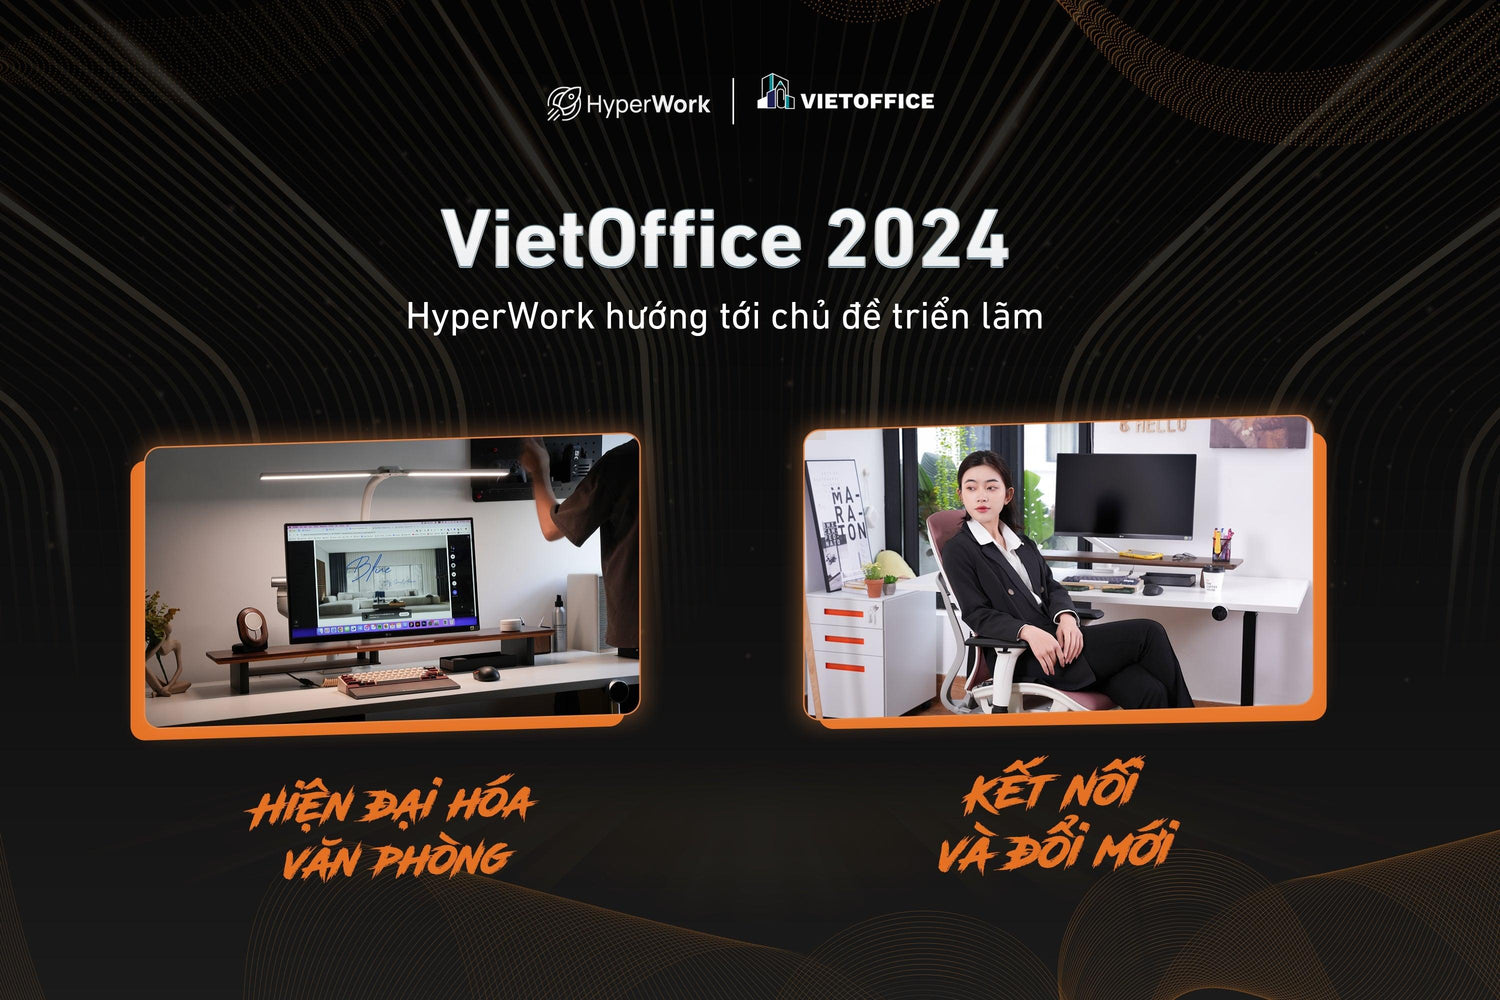 HyperWork hướng tới mục tiêu Hiện đại hóa văn phòng - Kết nối và đổi mới - chủ đề của VietOffice 2024 - HyperWork